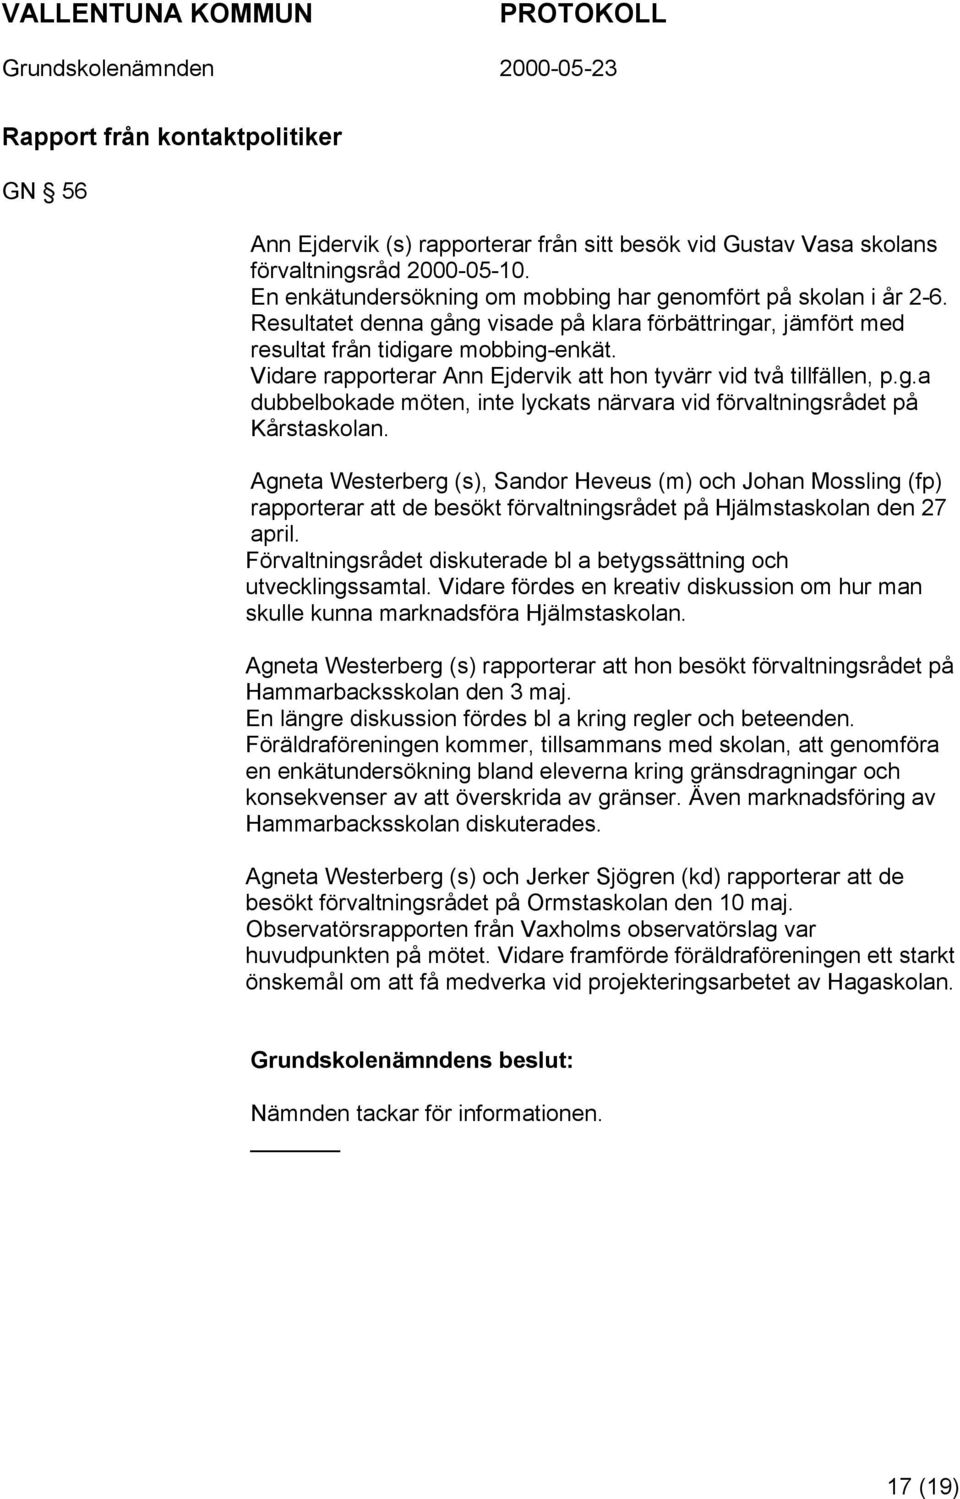 Agneta Westerberg (s), Sandor Heveus (m) och Johan Mossling (fp) rapporterar att de besökt förvaltningsrådet på Hjälmstaskolan den 27 april.